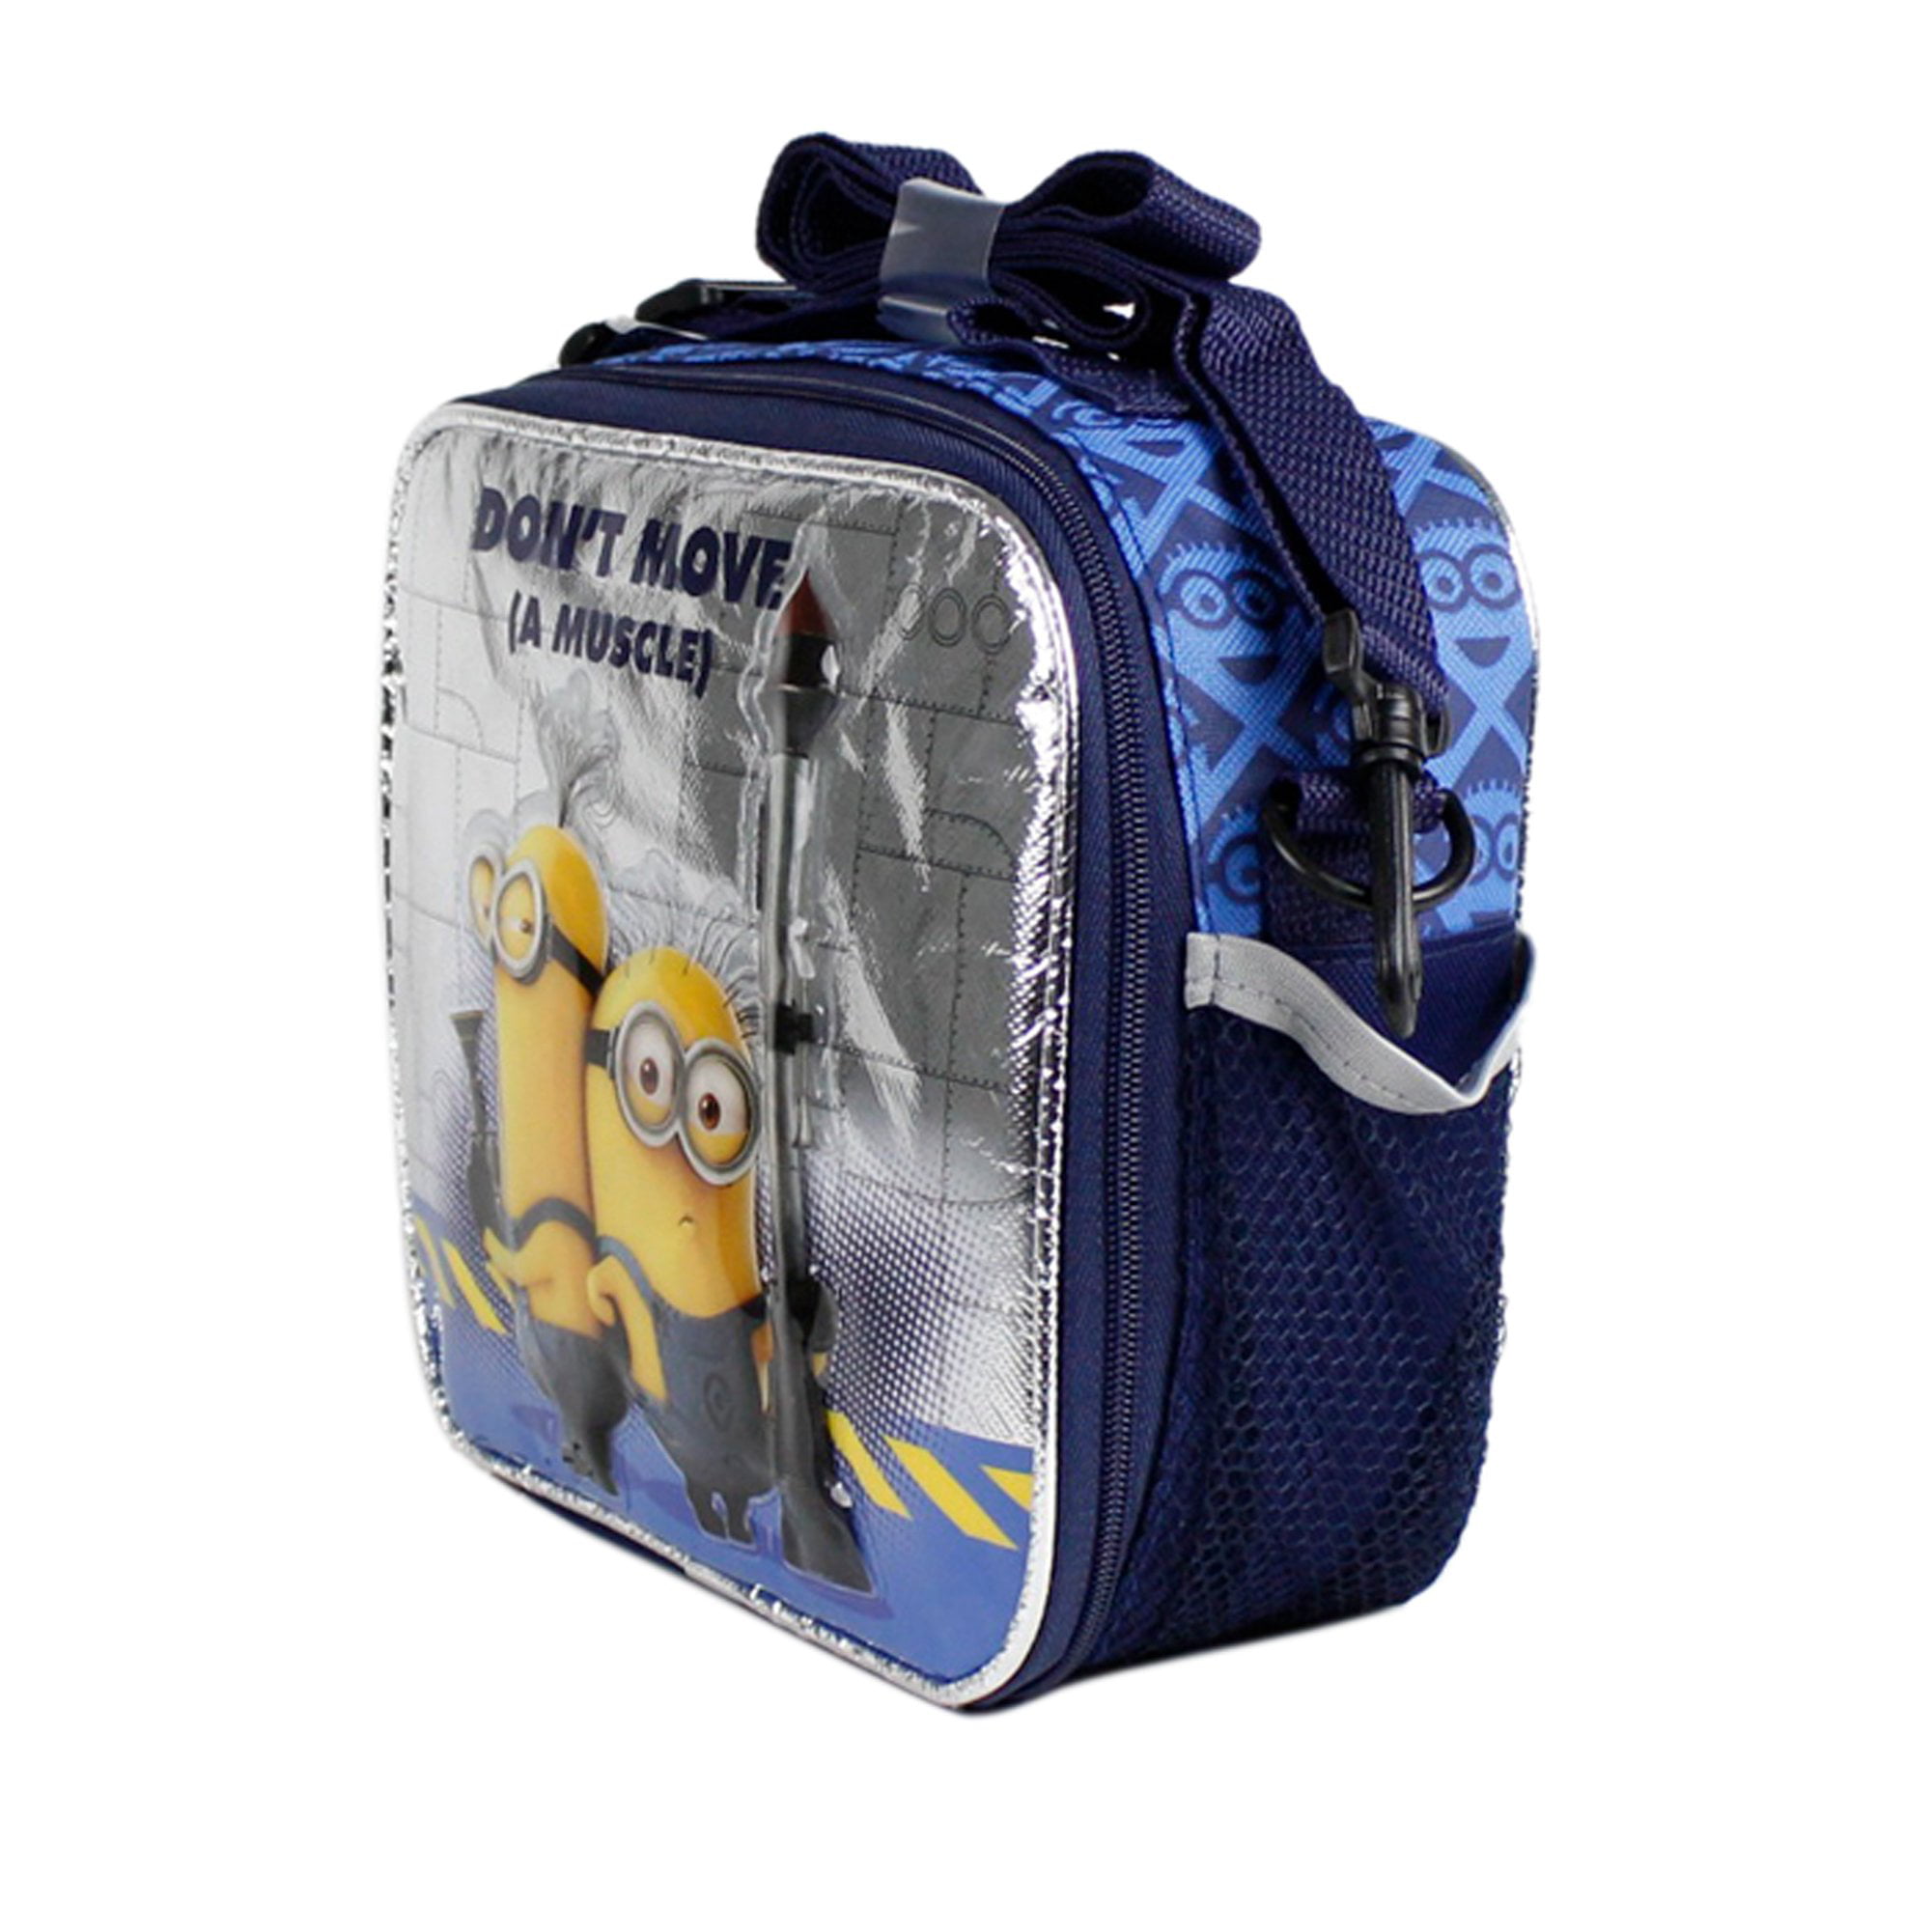 Minion Lunch Bag - All Fashion Bags